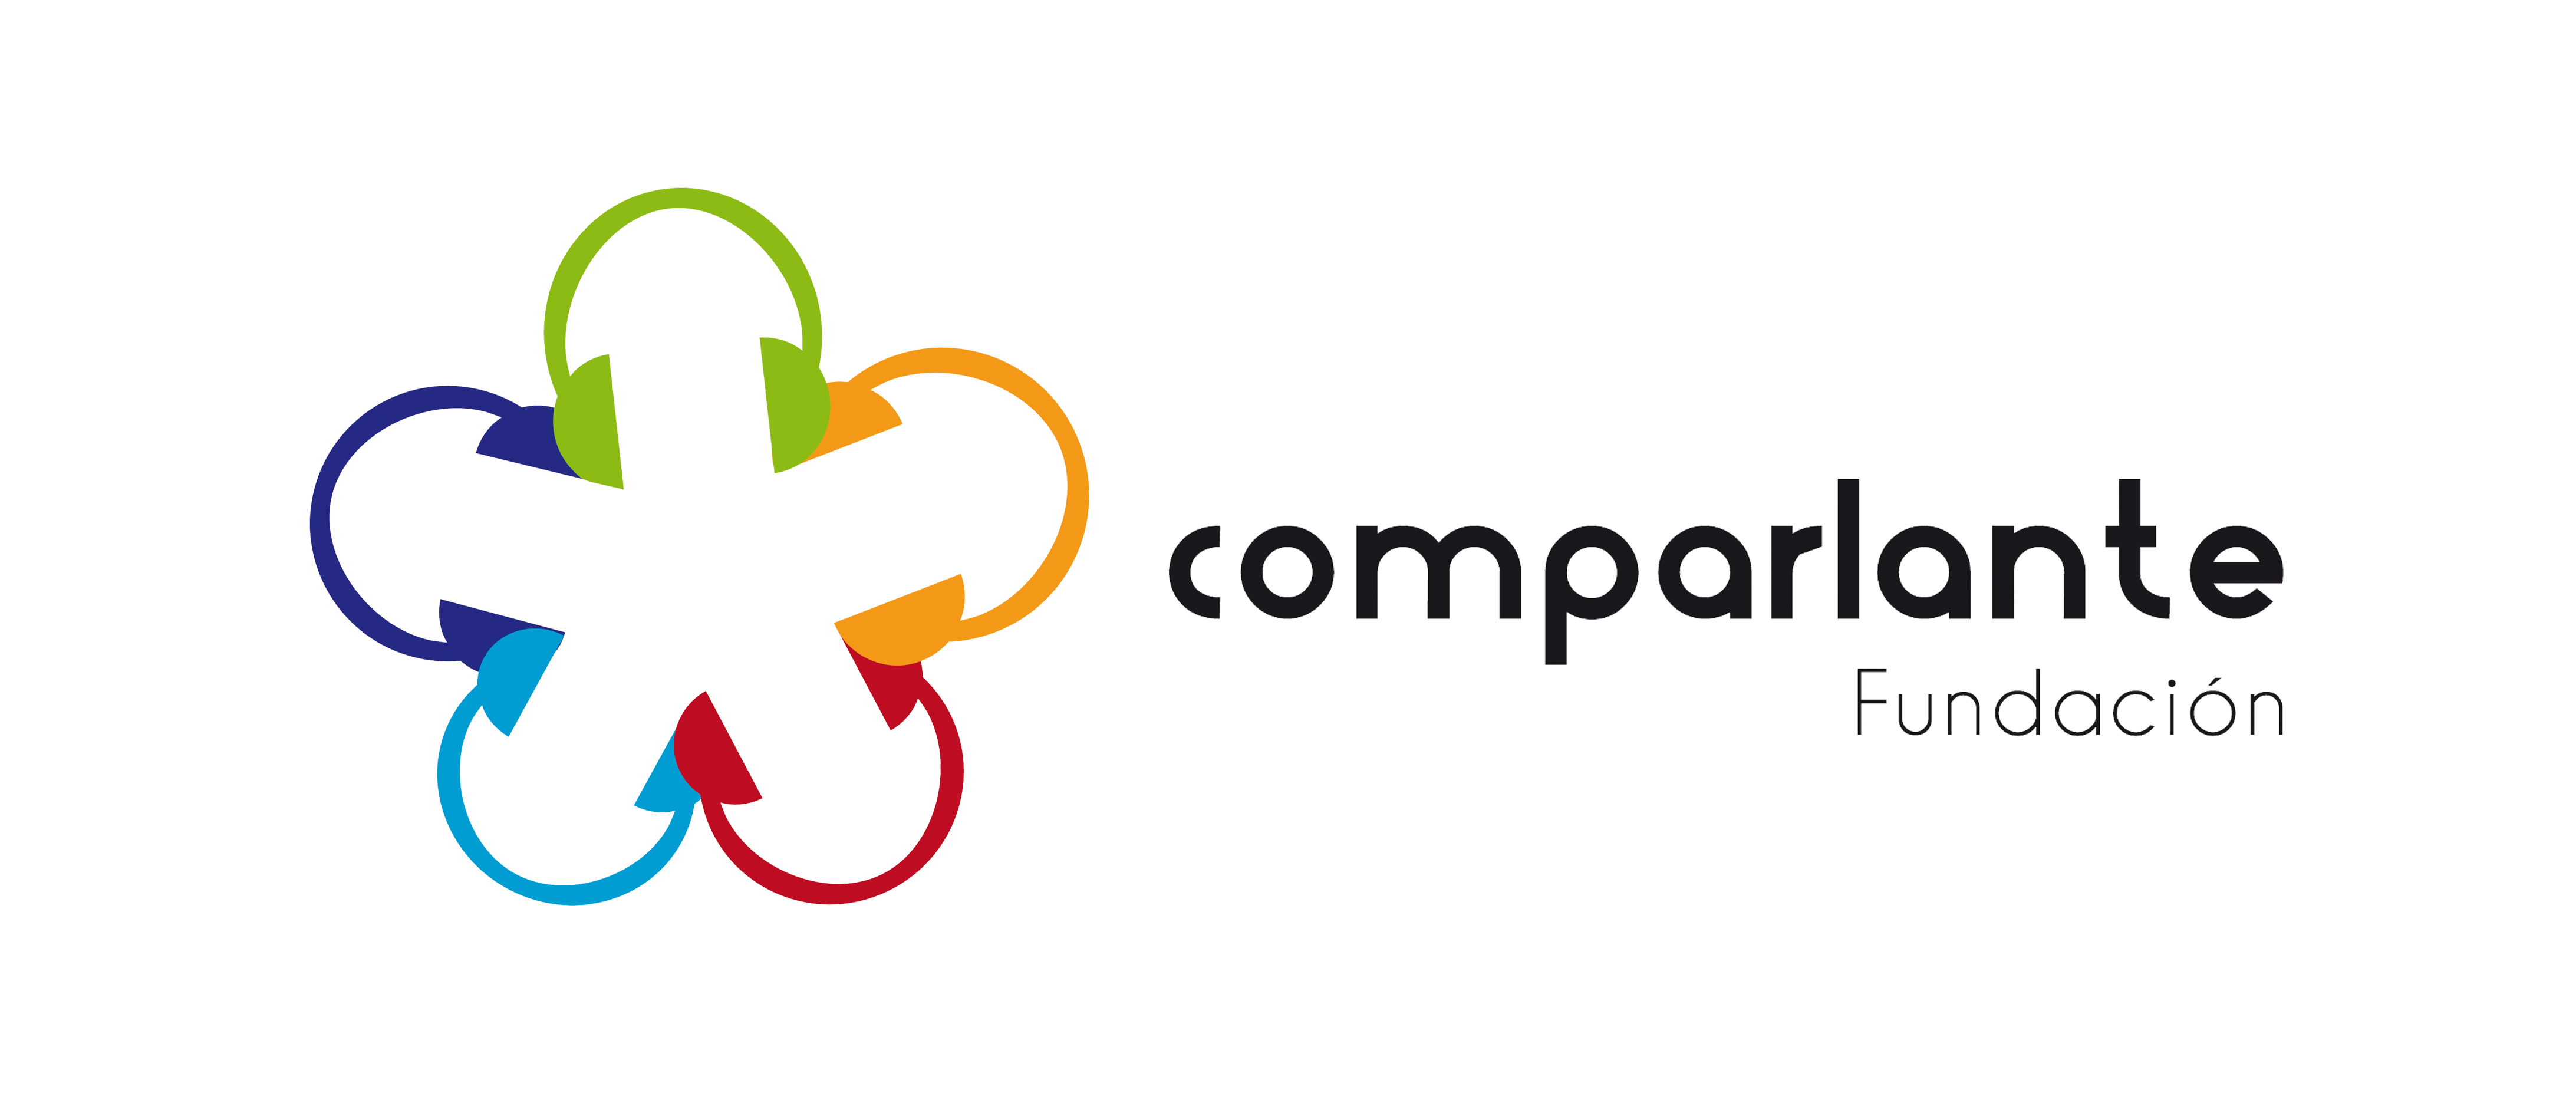 Logotipo de Fundación Comparlante. Las letras de "Comparlante
                    fundación" en color negro, el logo está compuesto de audífonos formando un círculo con los colores
                    verde, azul, celeste, rojo y naranja